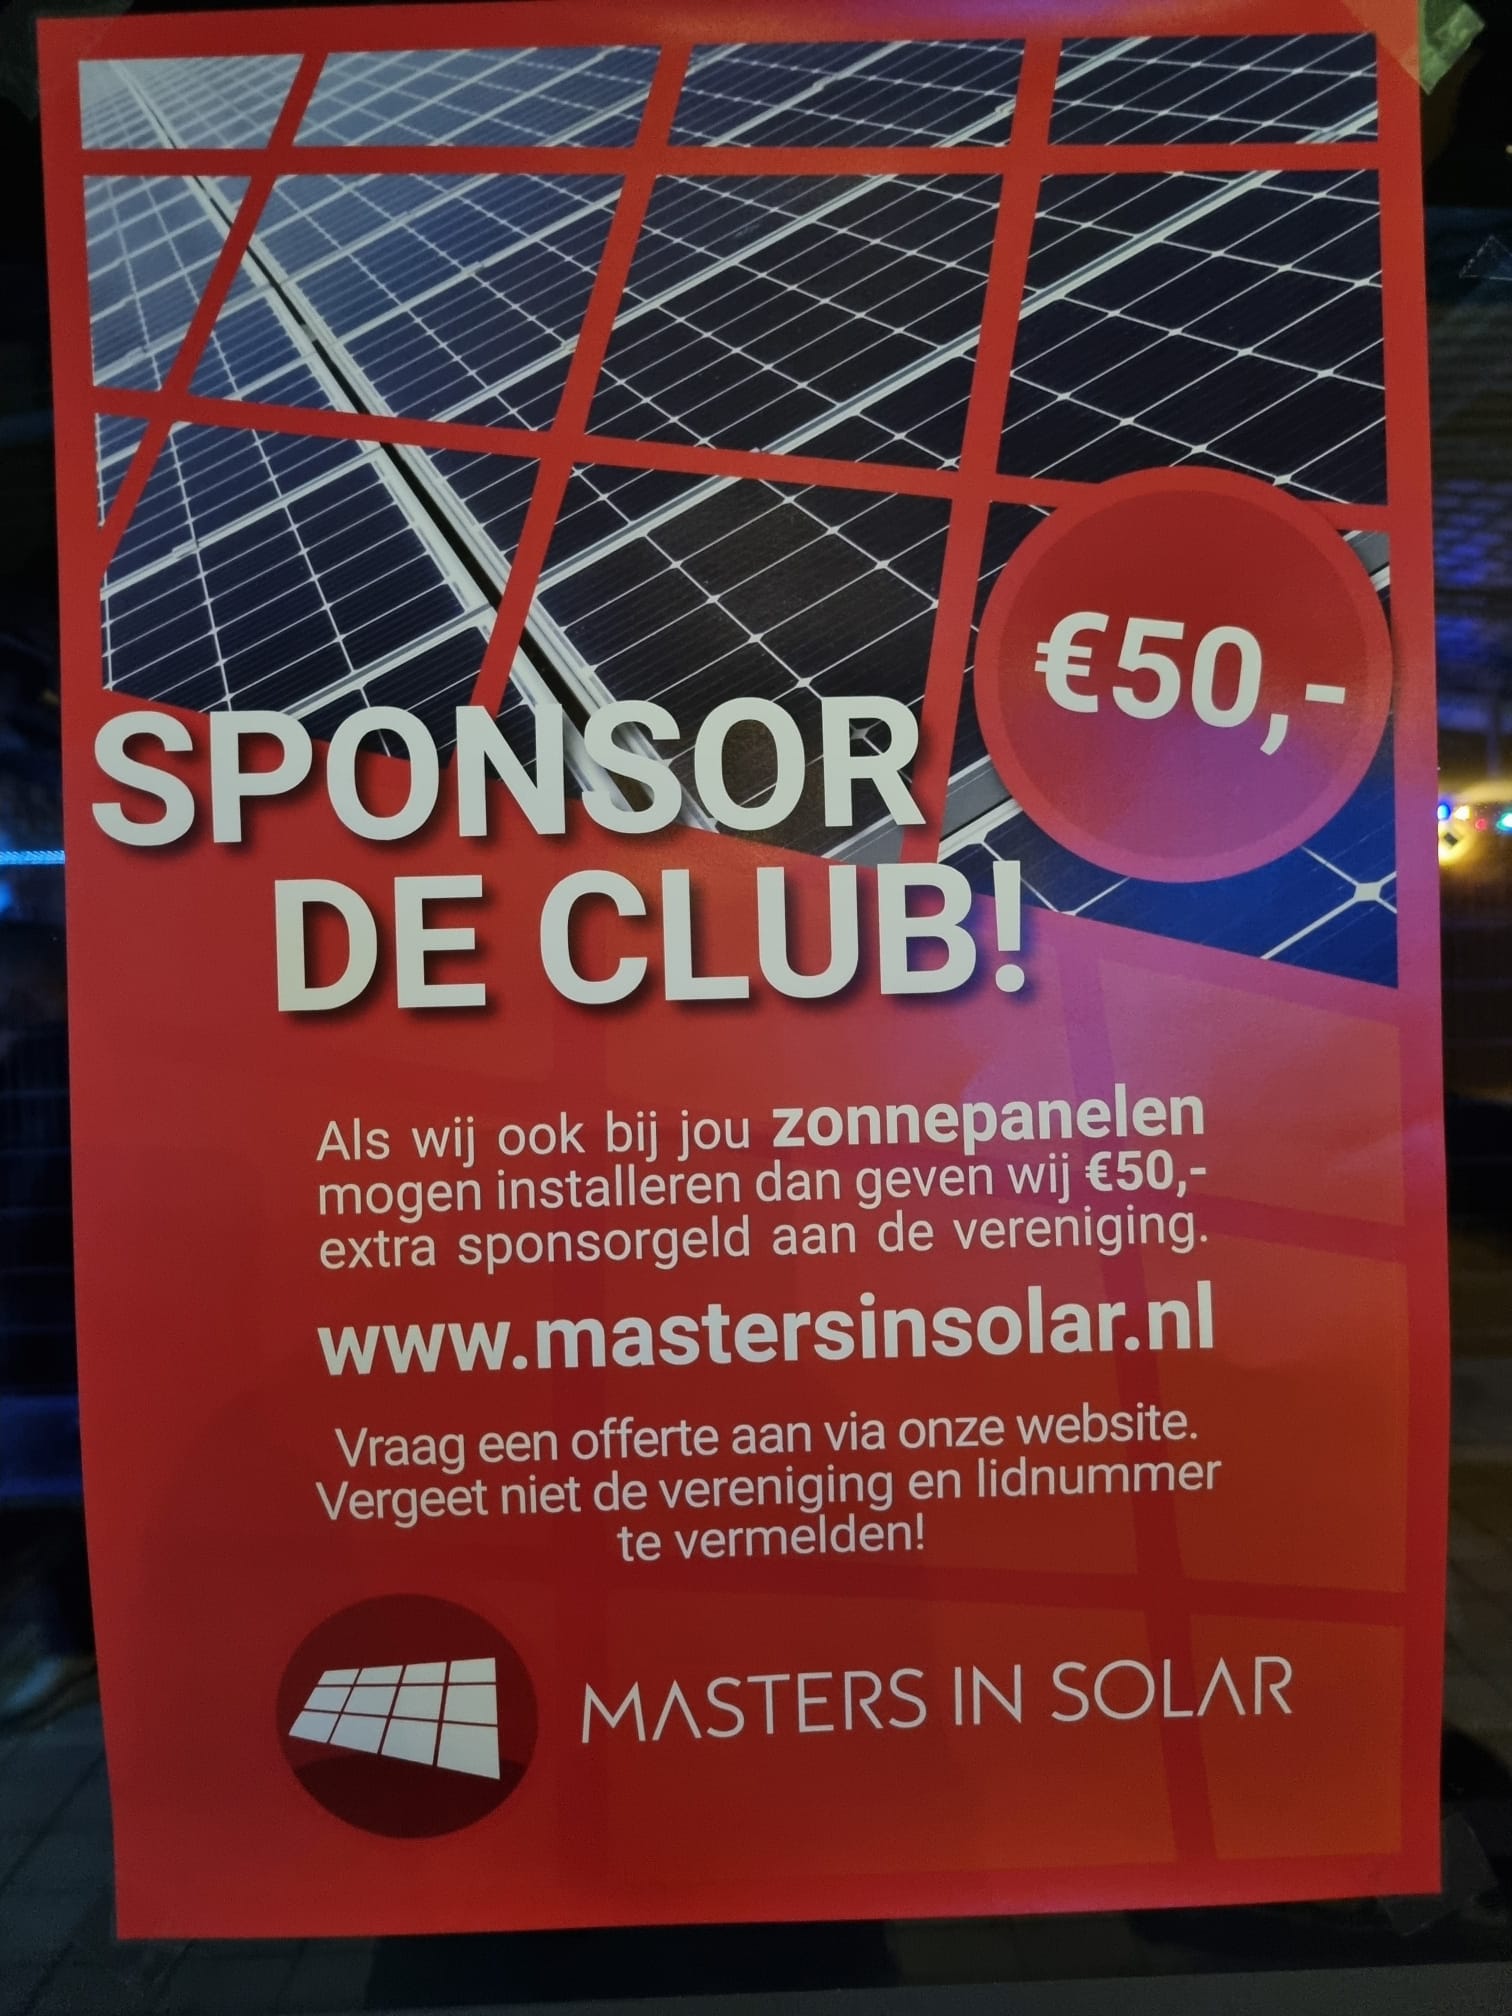 Installeer zonnepanelen én sponsor de club